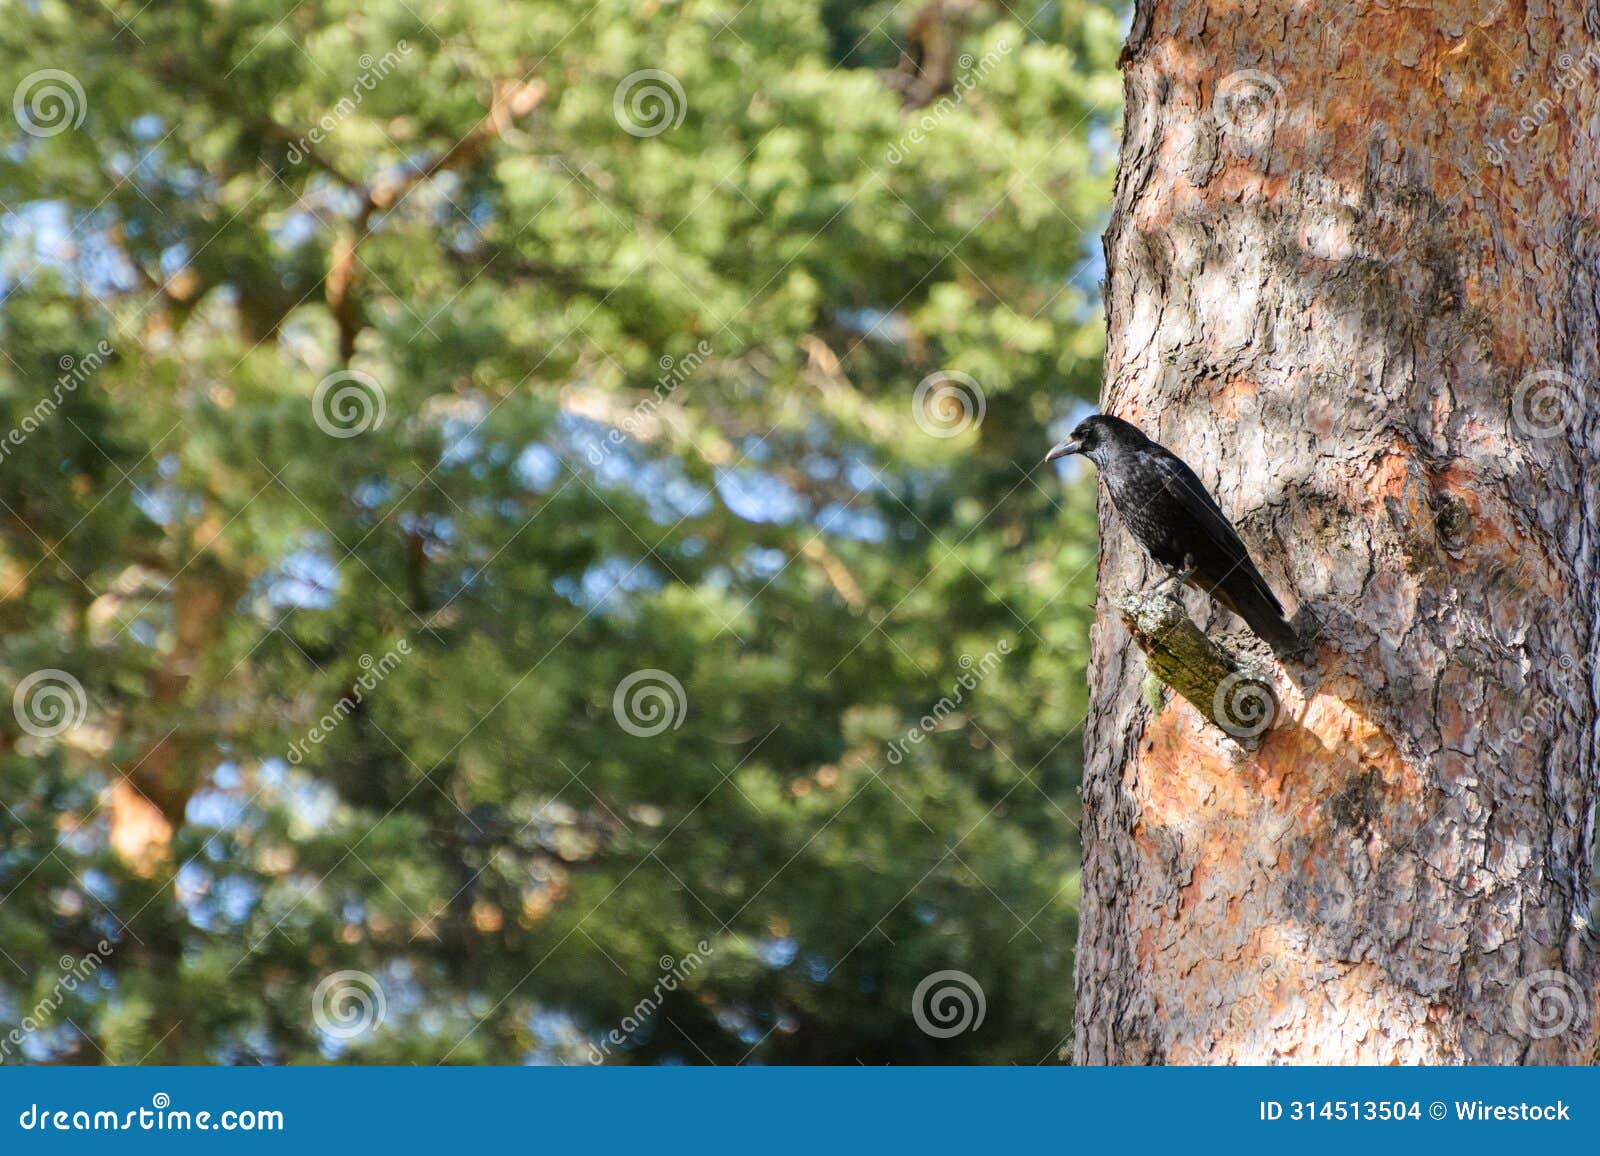 crow in the bosque de valsain, parque nacional de la sierra de guadarama